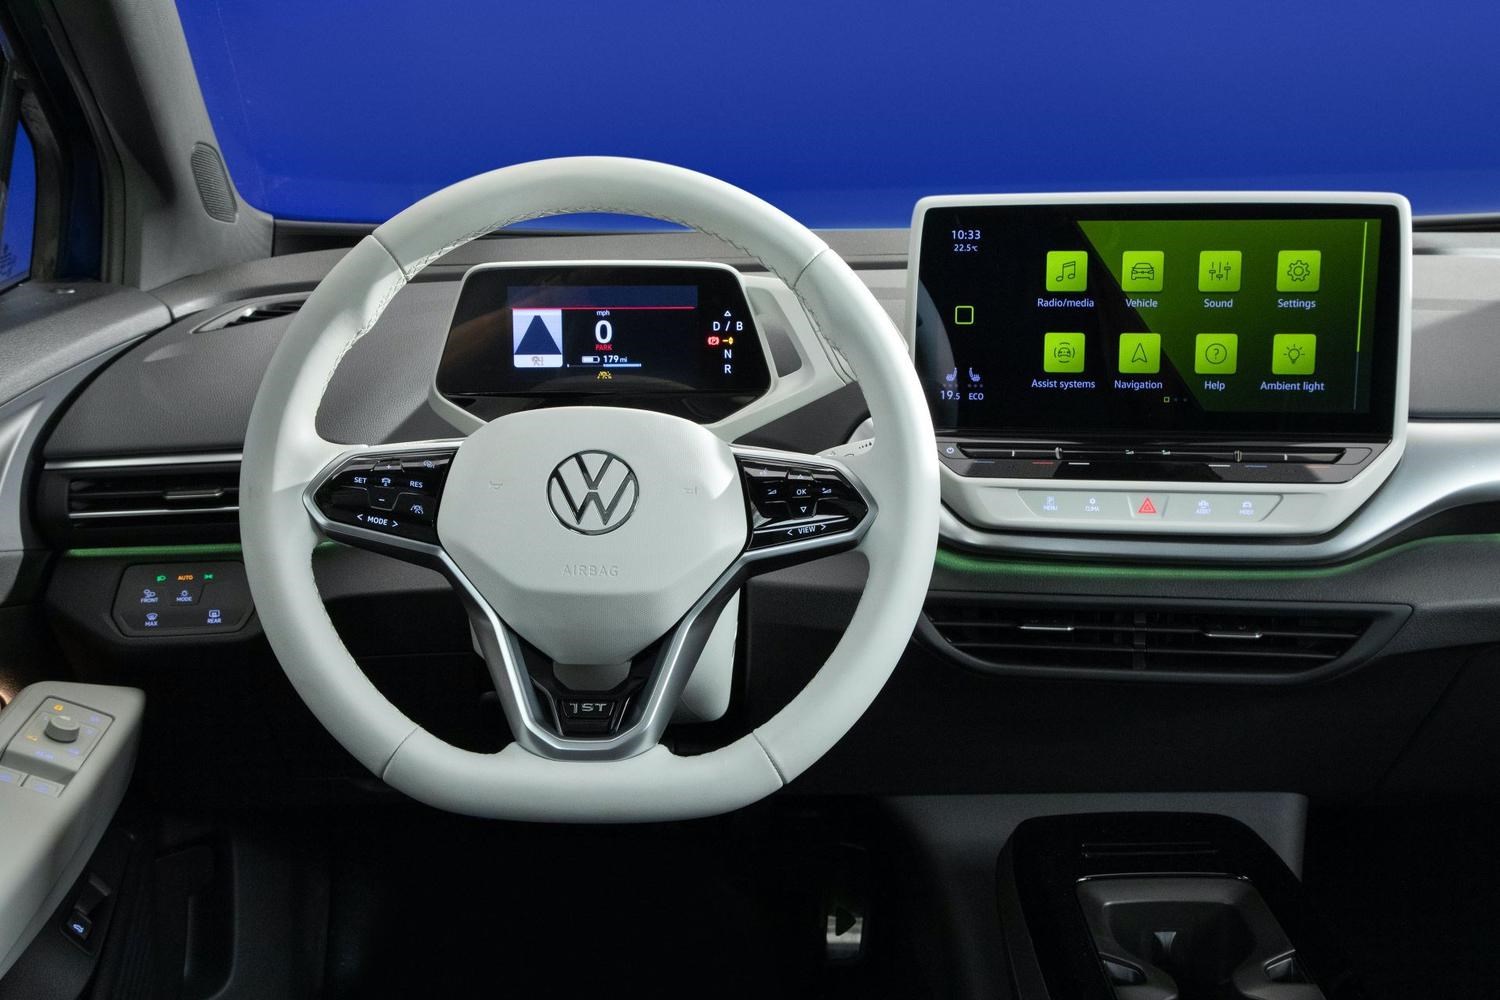 VW elektrik araç satışlarında umduğunu bulamadı, işte detaylar